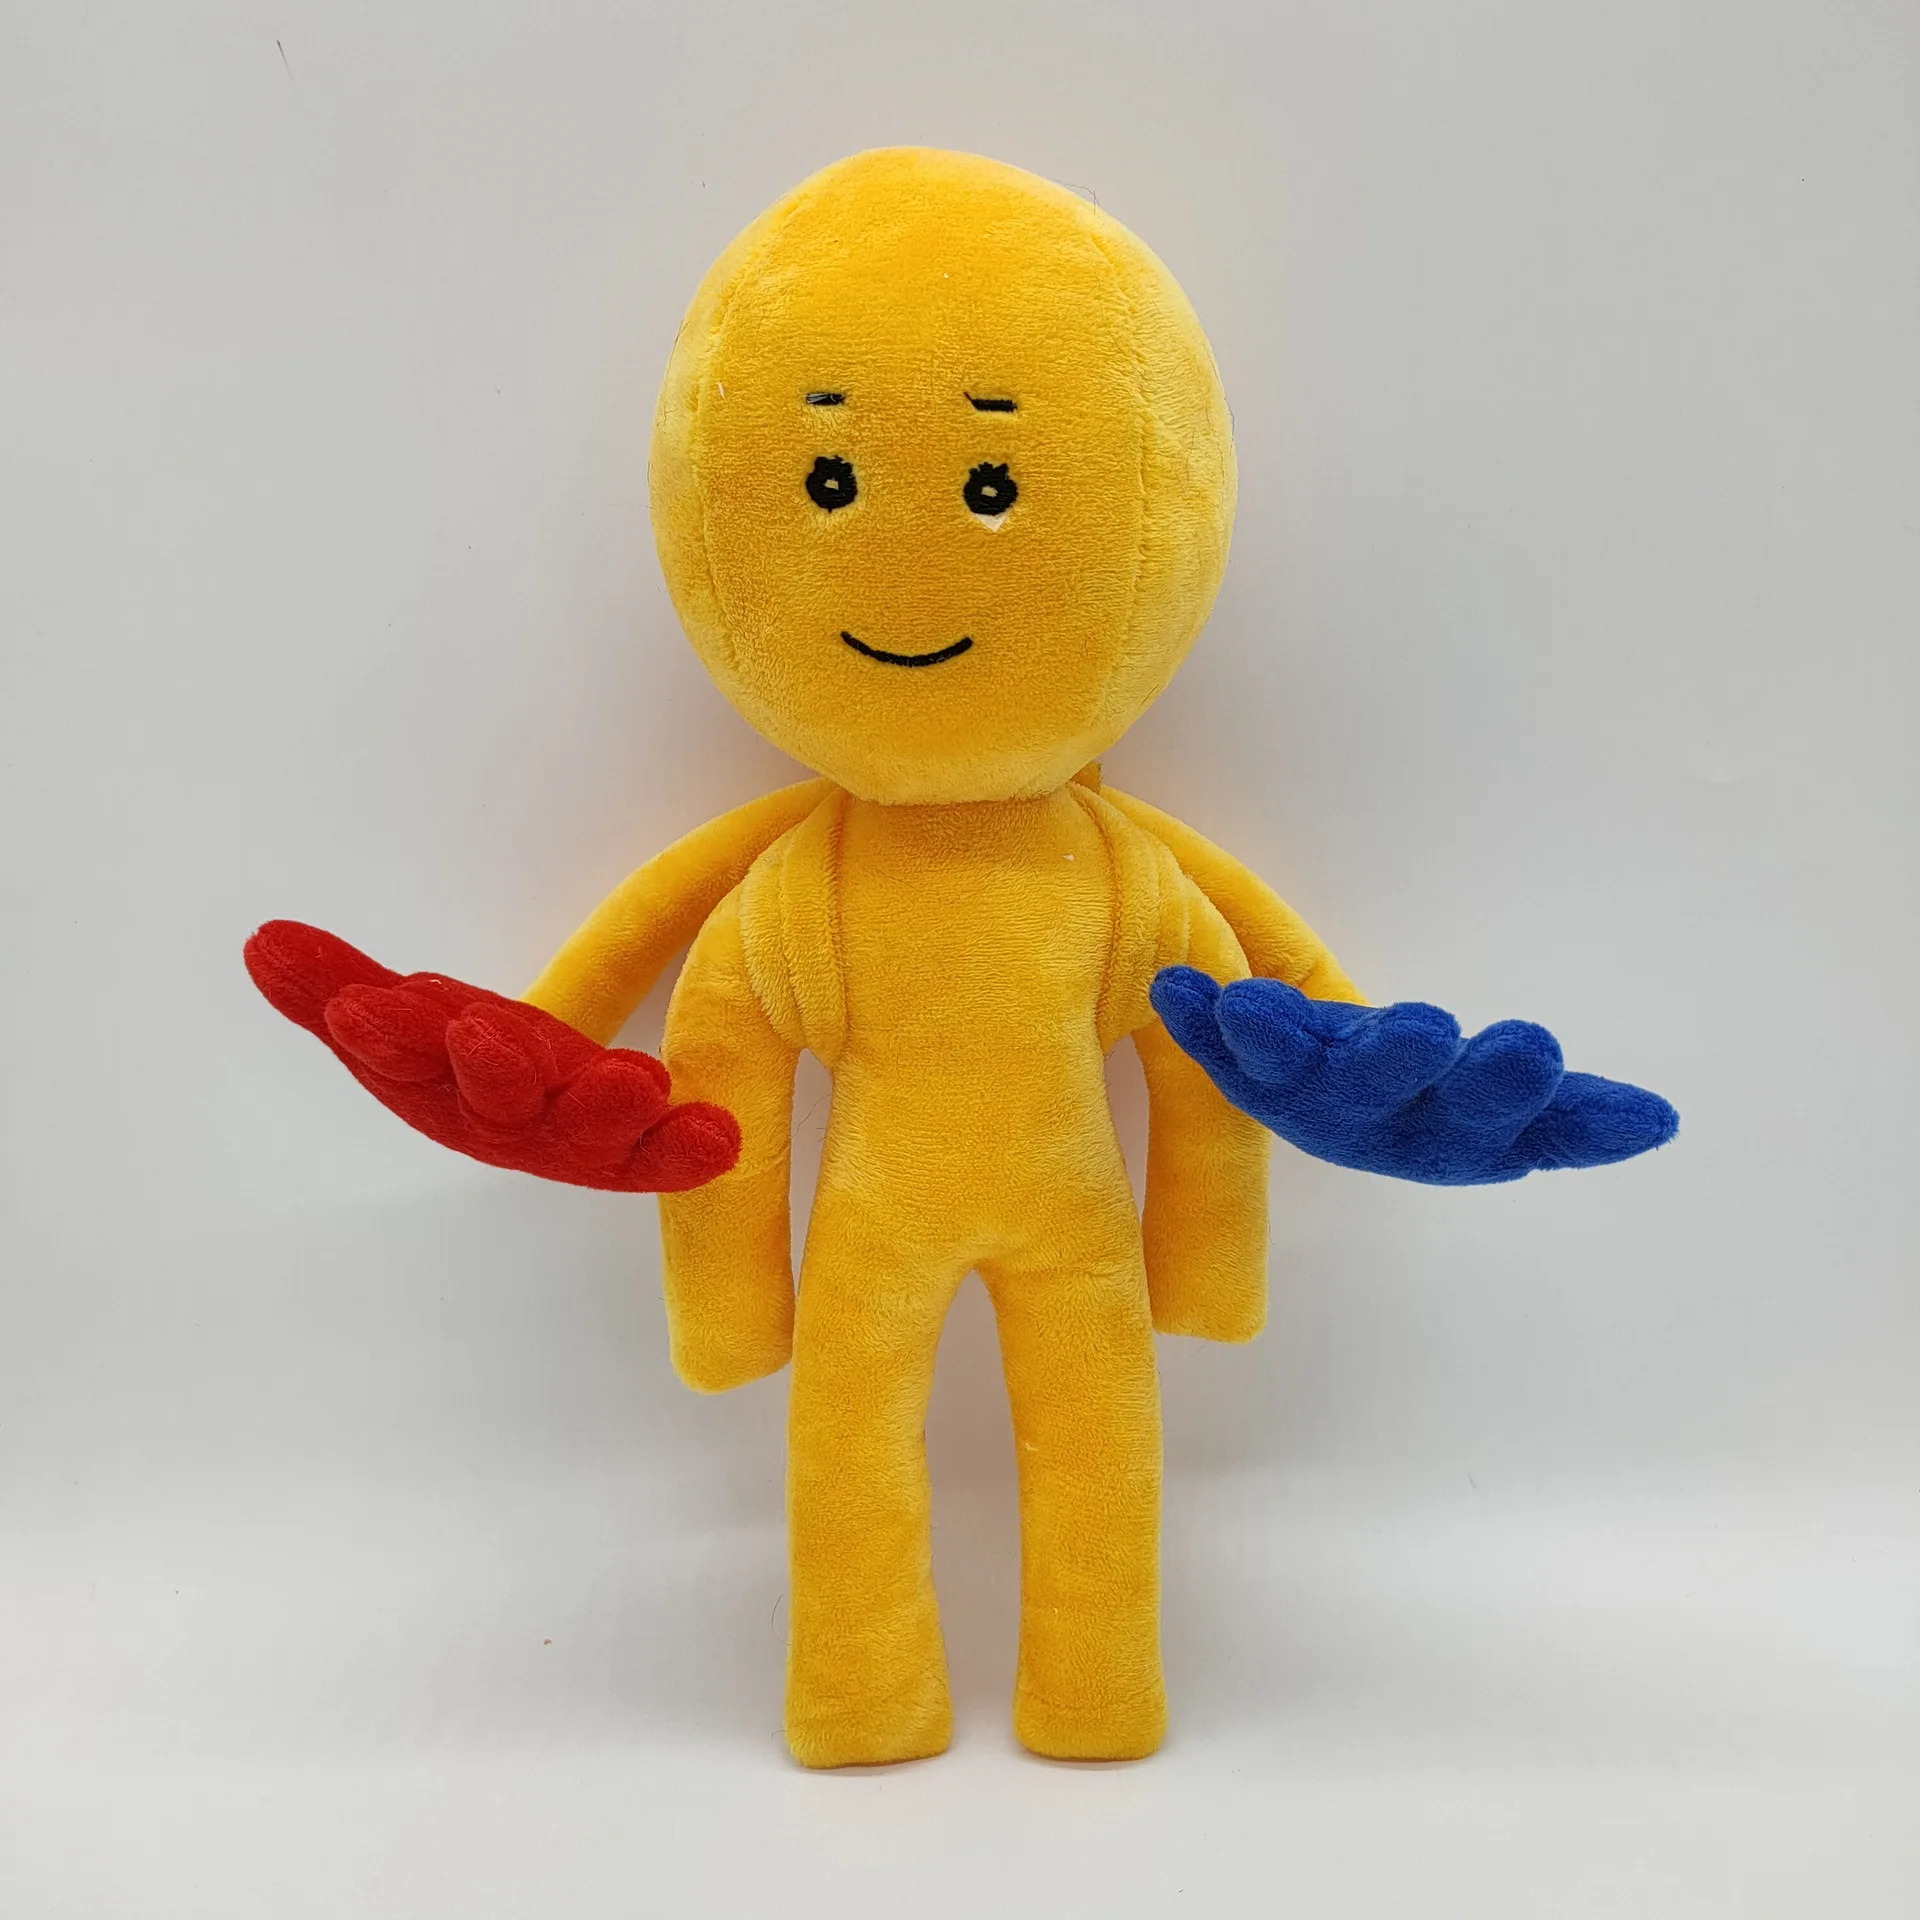 Player Poppy Playtime 33 cm Plush Toy